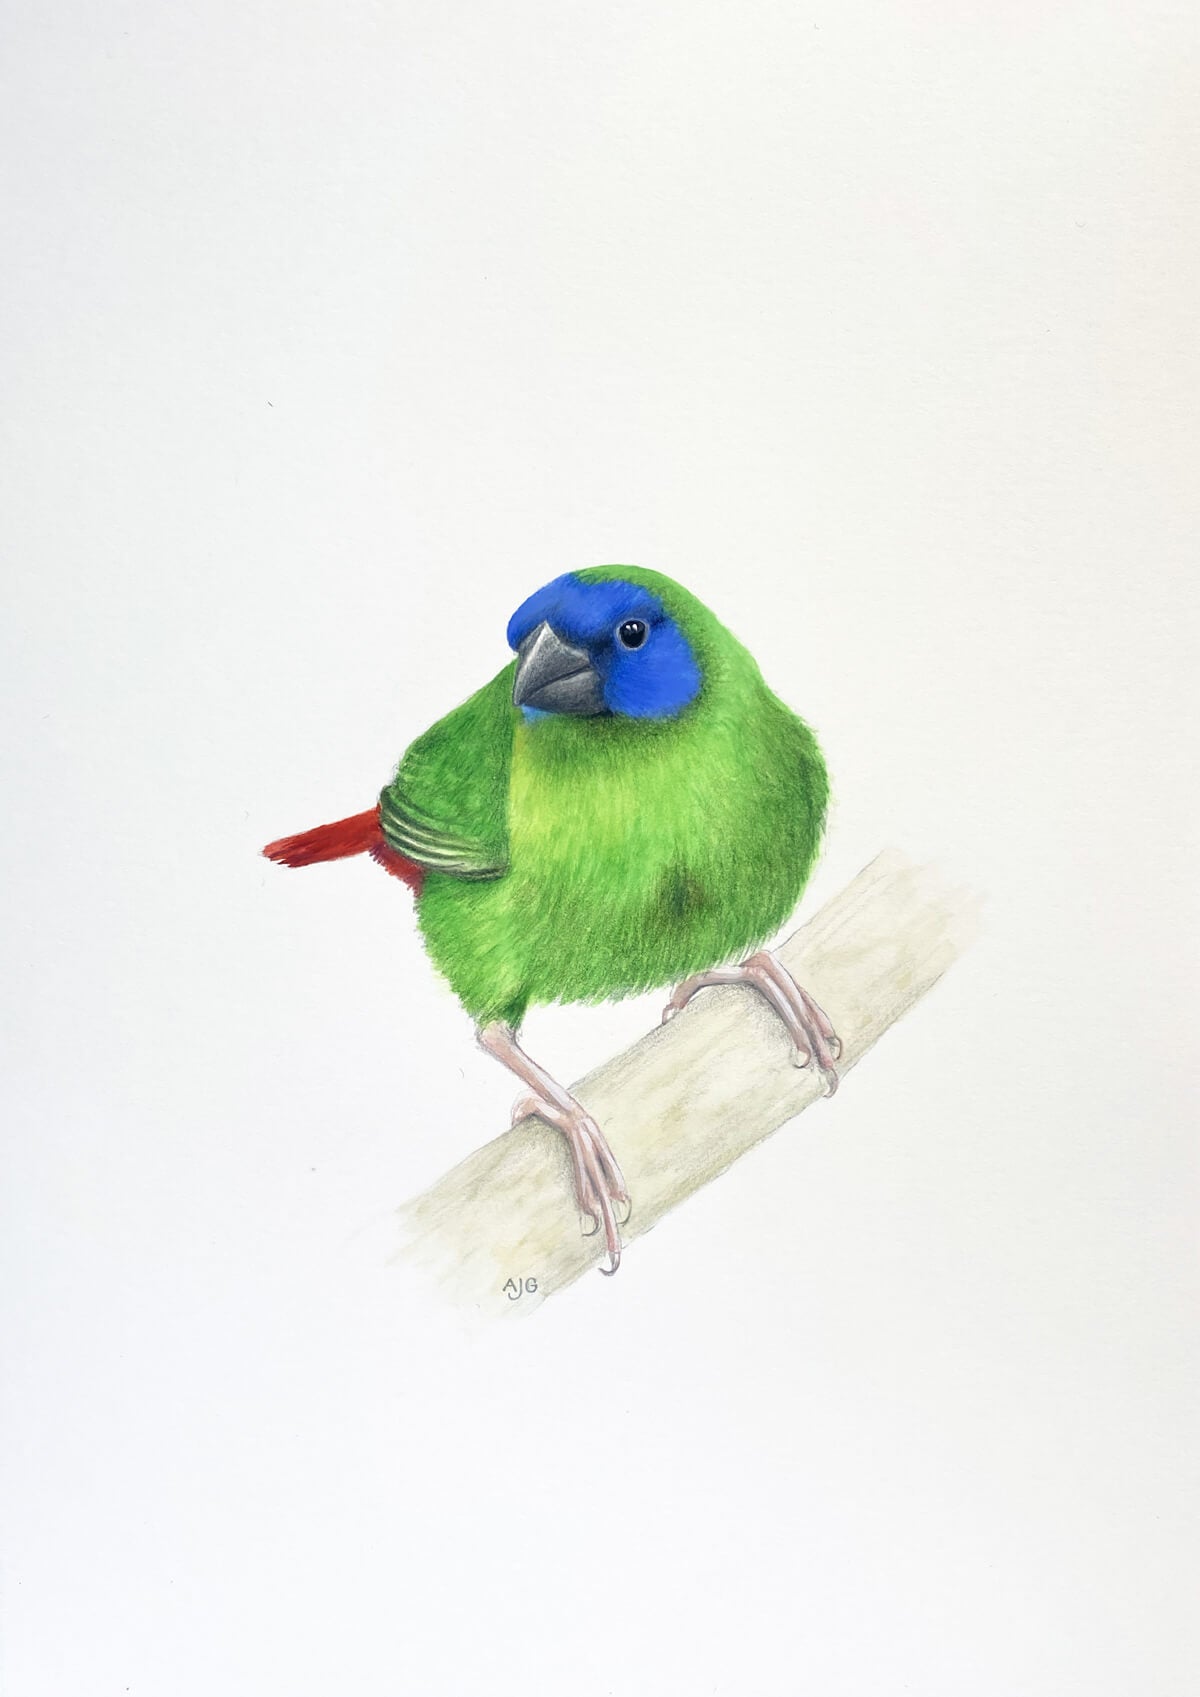 Original A4 gouache and pencil artwork of a Blue-faced Parrot Finch by bird artist Amanda Gosse